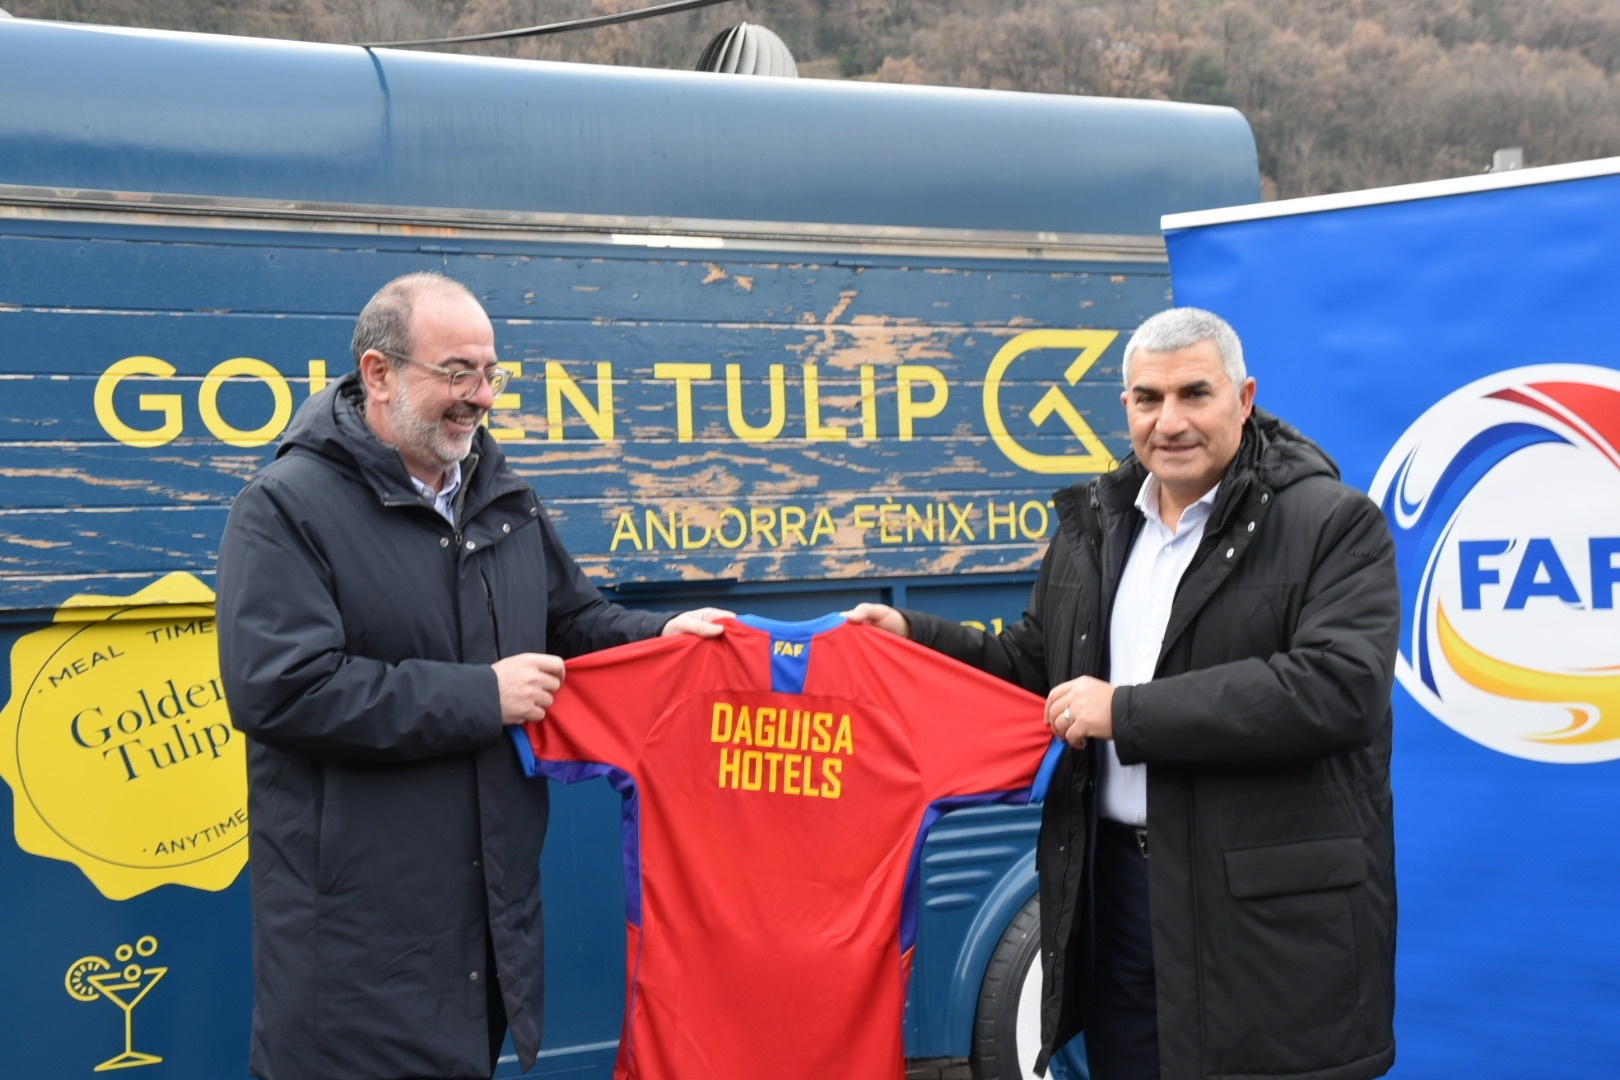 Daguisa Hotels devient le nouveau sponsor officiel de la Fédération andorrane de football